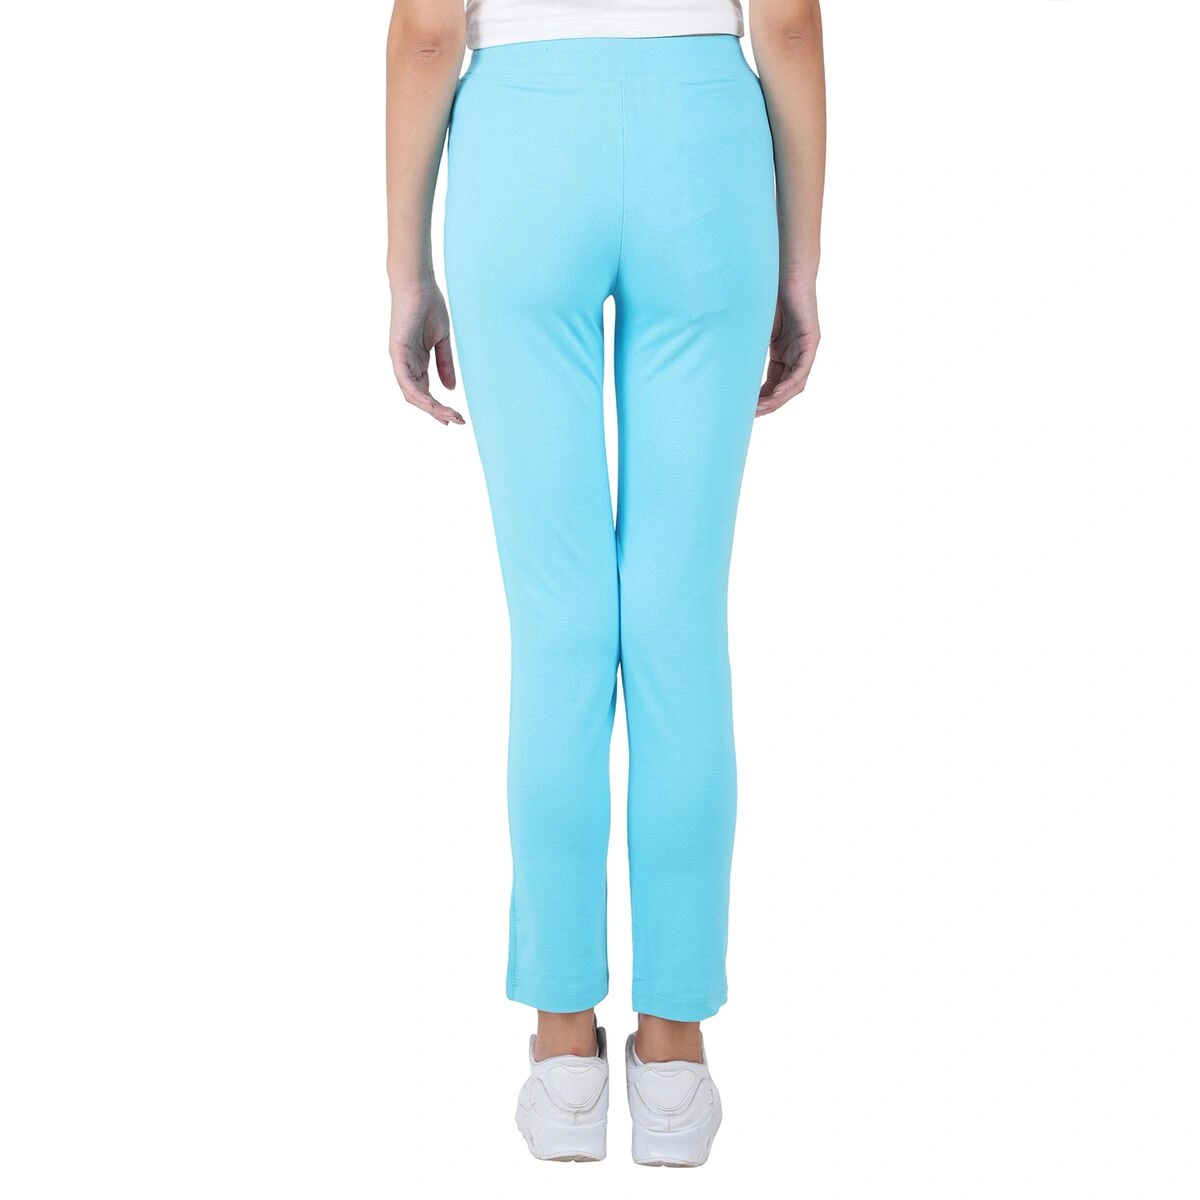 What shirt color matches light blue pants  Quora